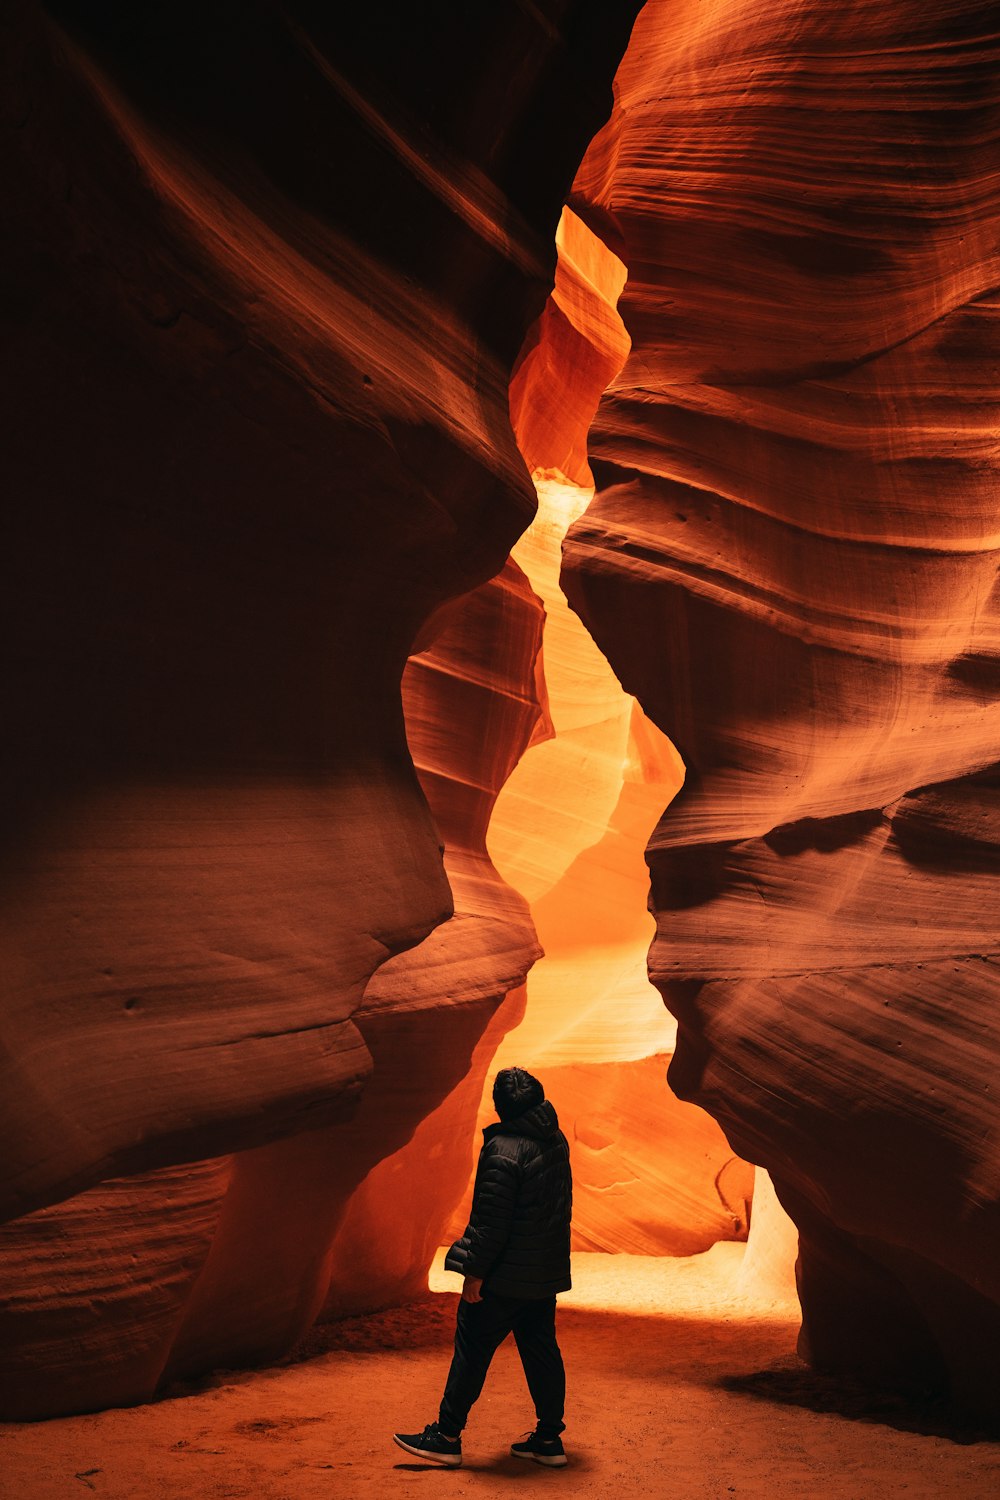 a person walking through a narrow slot in a canyon